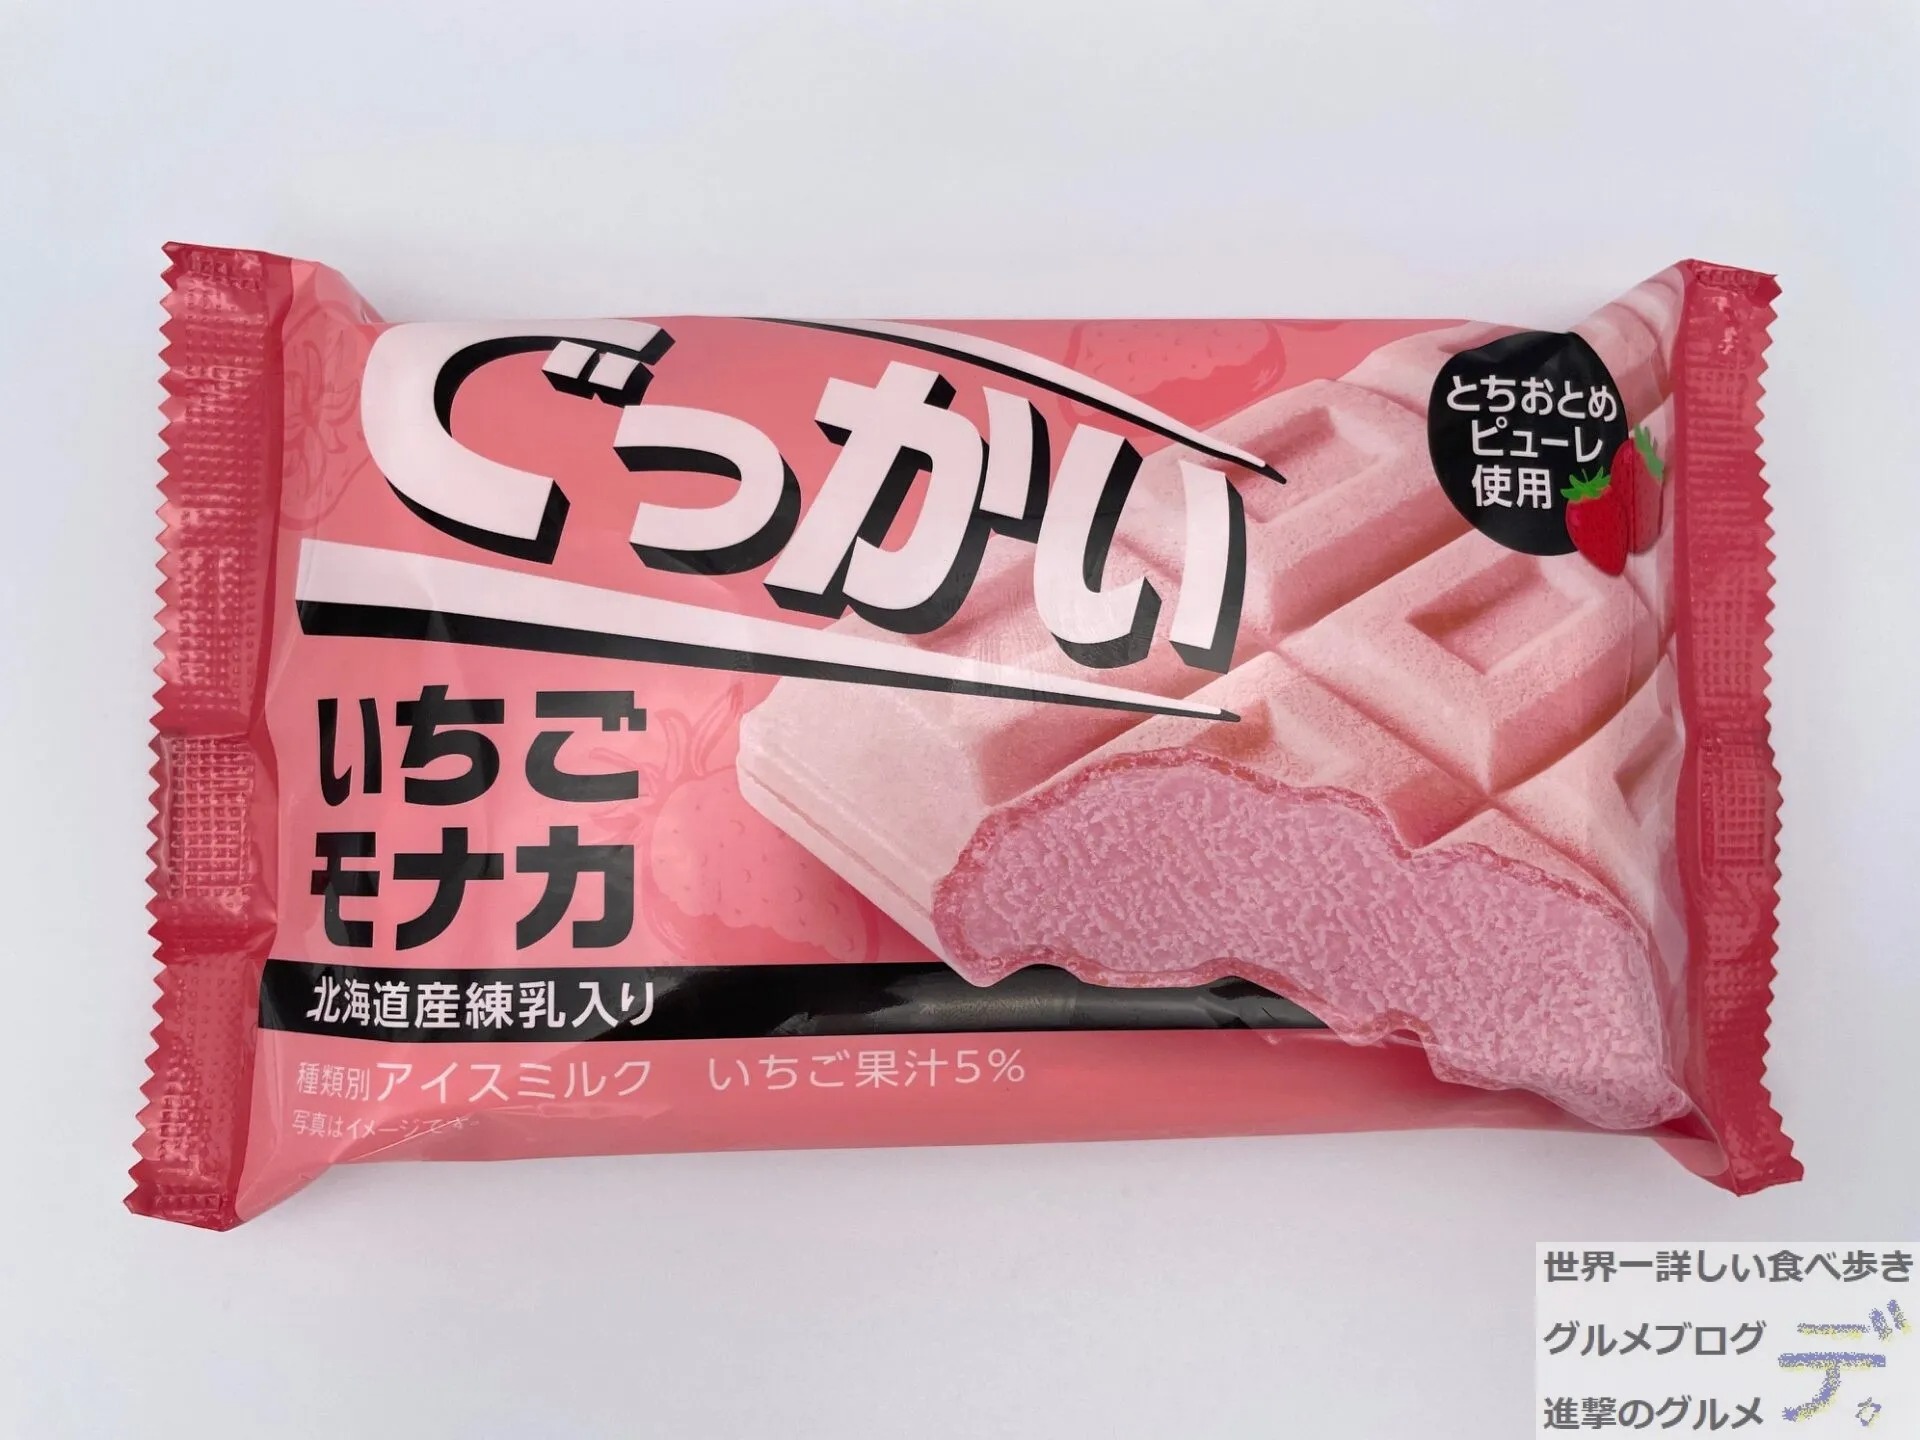 ファミマ新作 ジャンボモナカアイス を食べてみた 進撃のグルメ Yahoo Japan クリエイターズプログラム